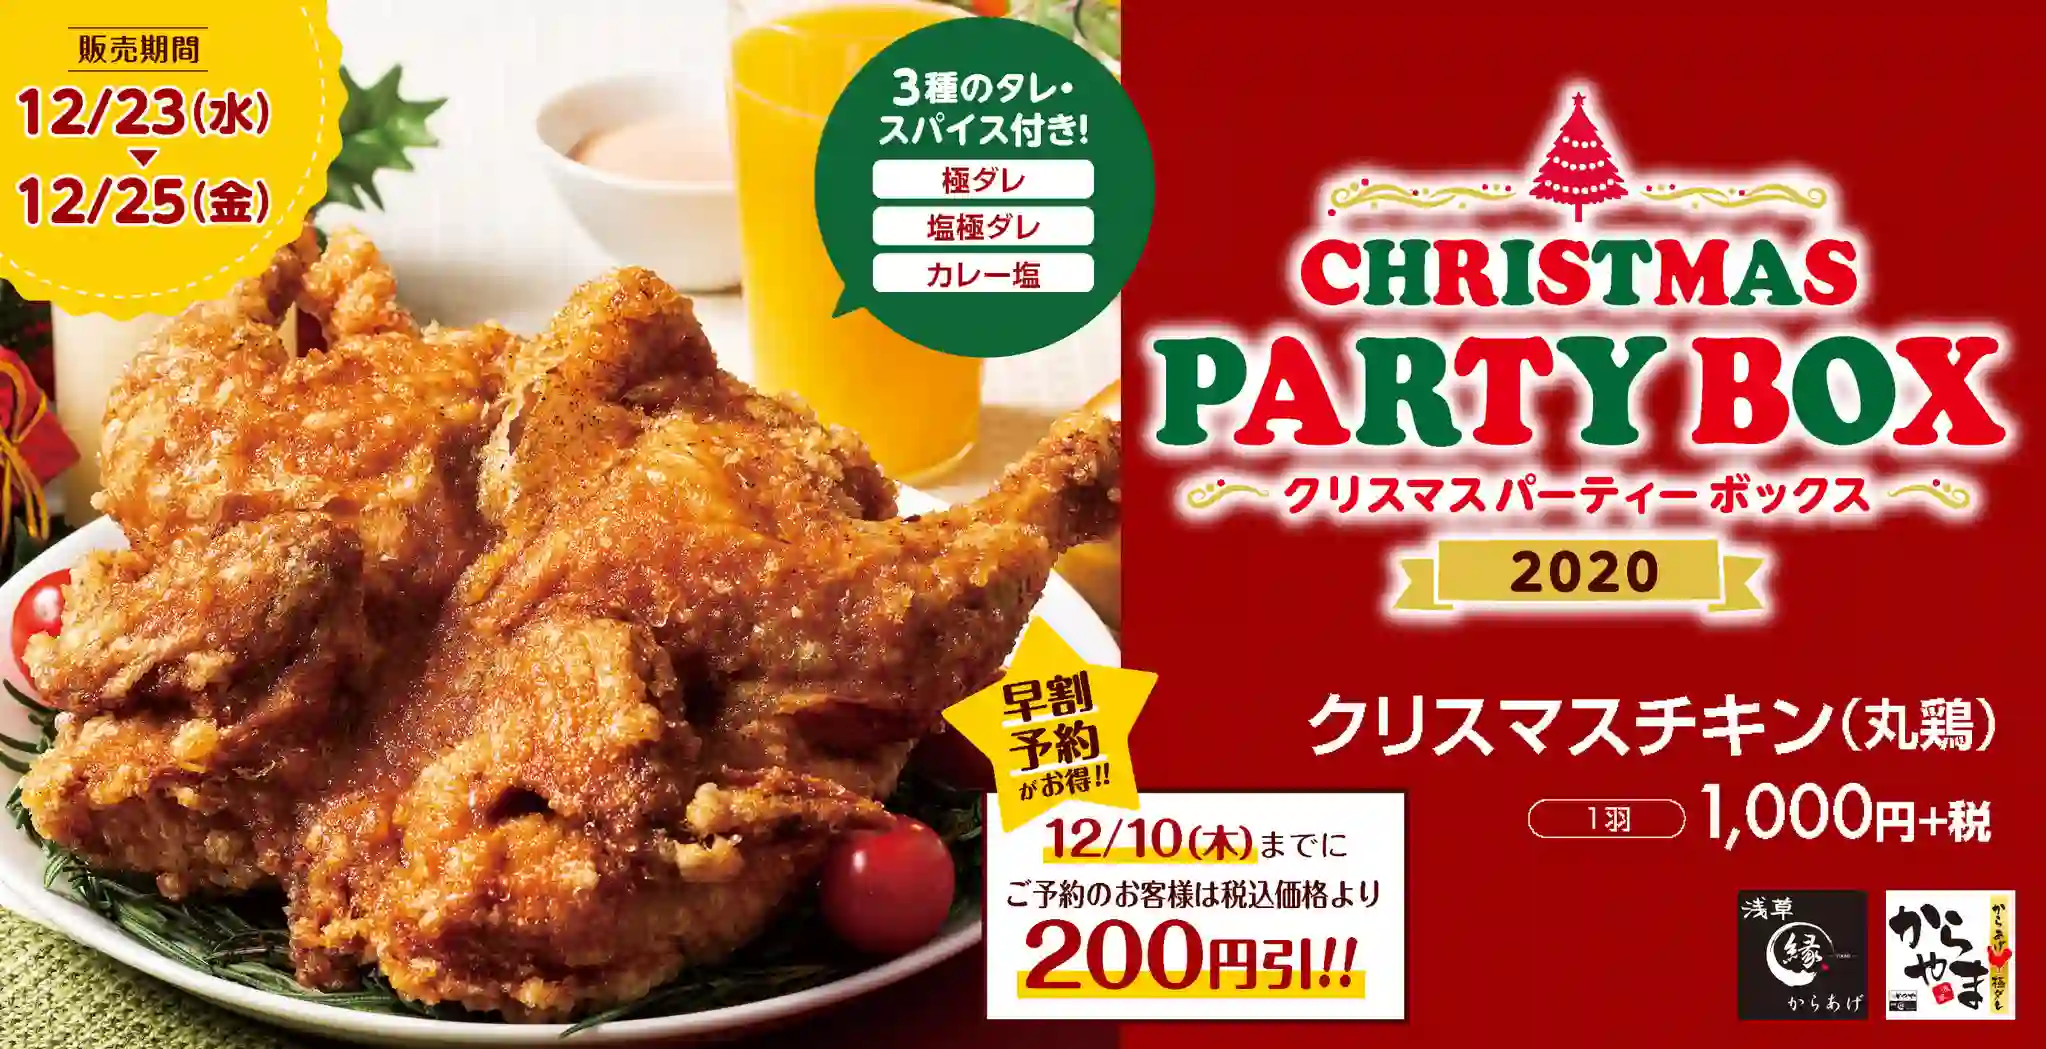 일본은 크리스마스에 치킨을 먹는다